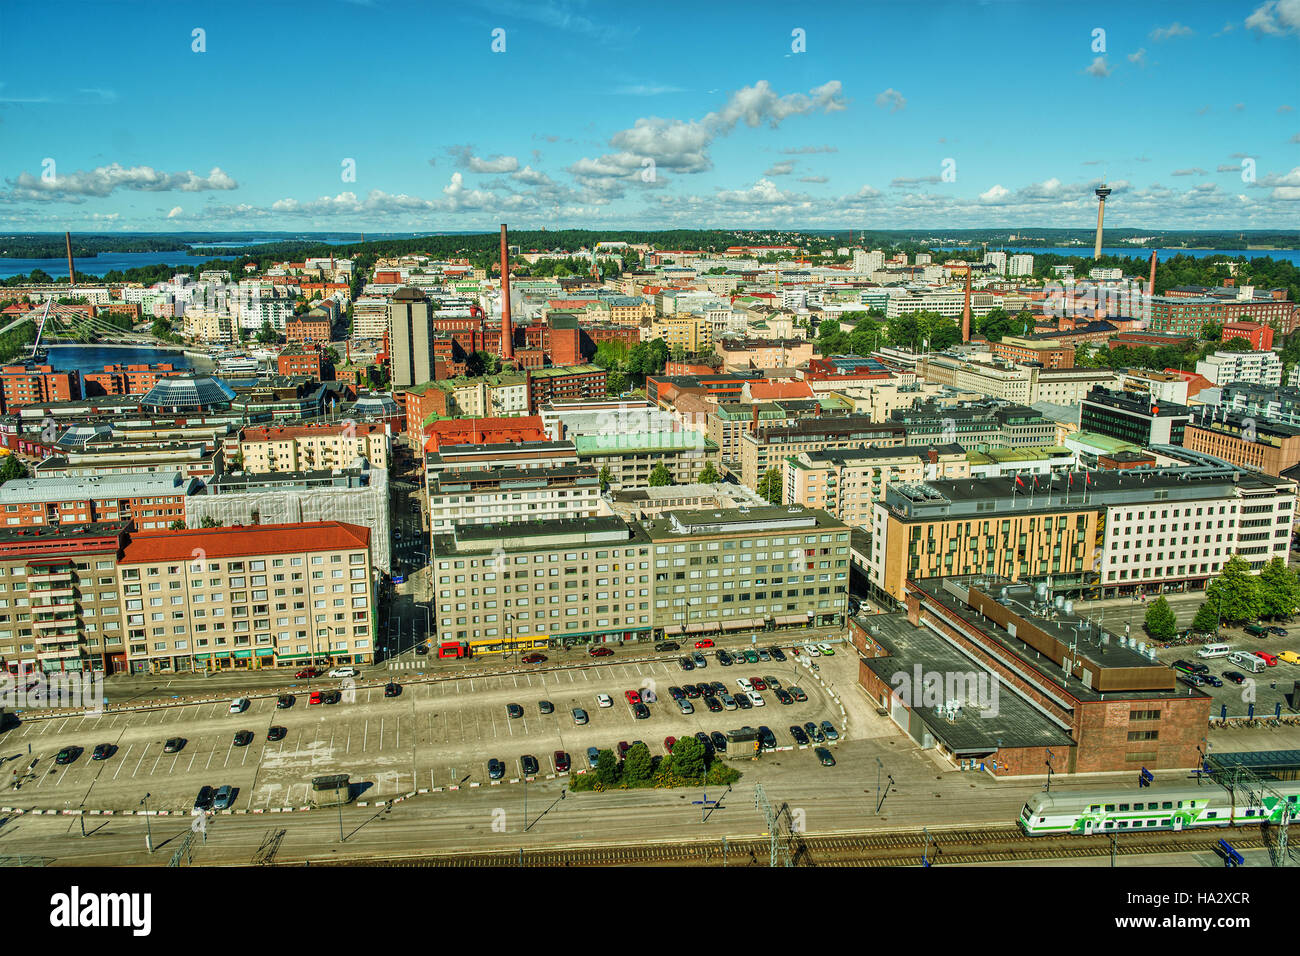 Skyline der Stadt, Tampere, Finnland Stockfotografie - Alamy